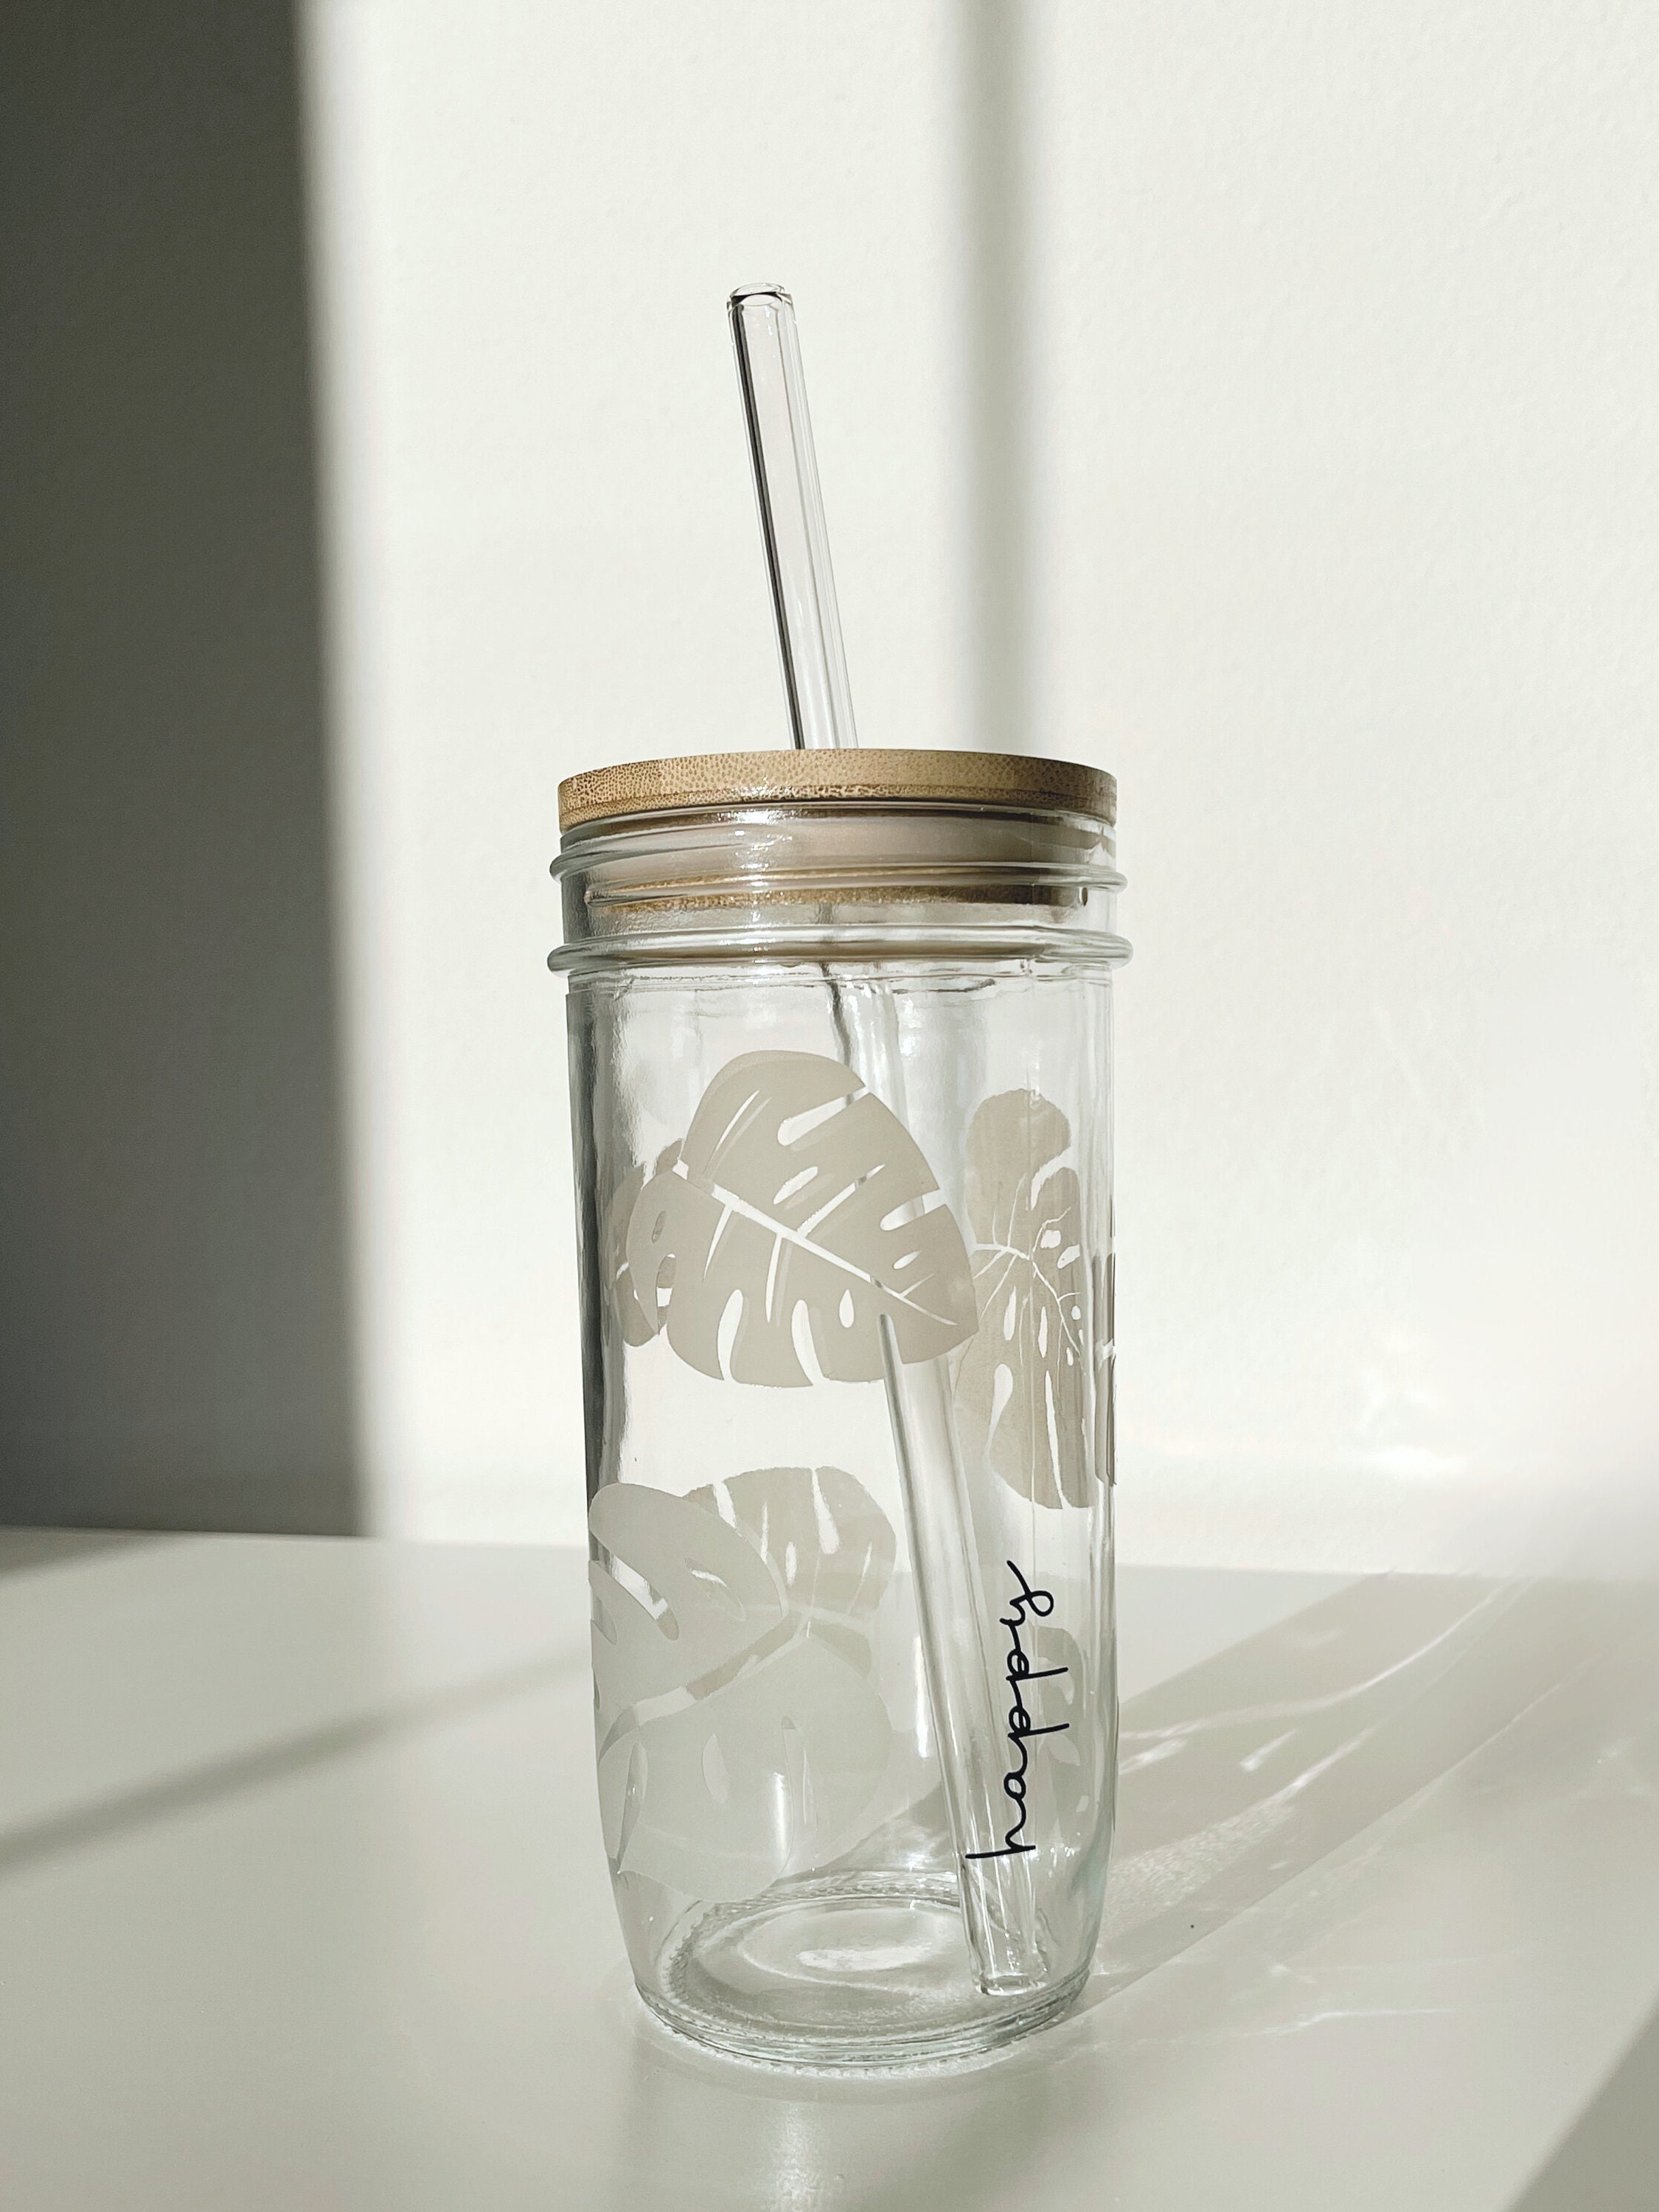 Smiths Mason Jars 16oz/473ml 4 Pack Iced Coffee Cups with Lids and Straws and Handles - Boba Straws Reusable Glass, Good for Milkshake, Lemonade